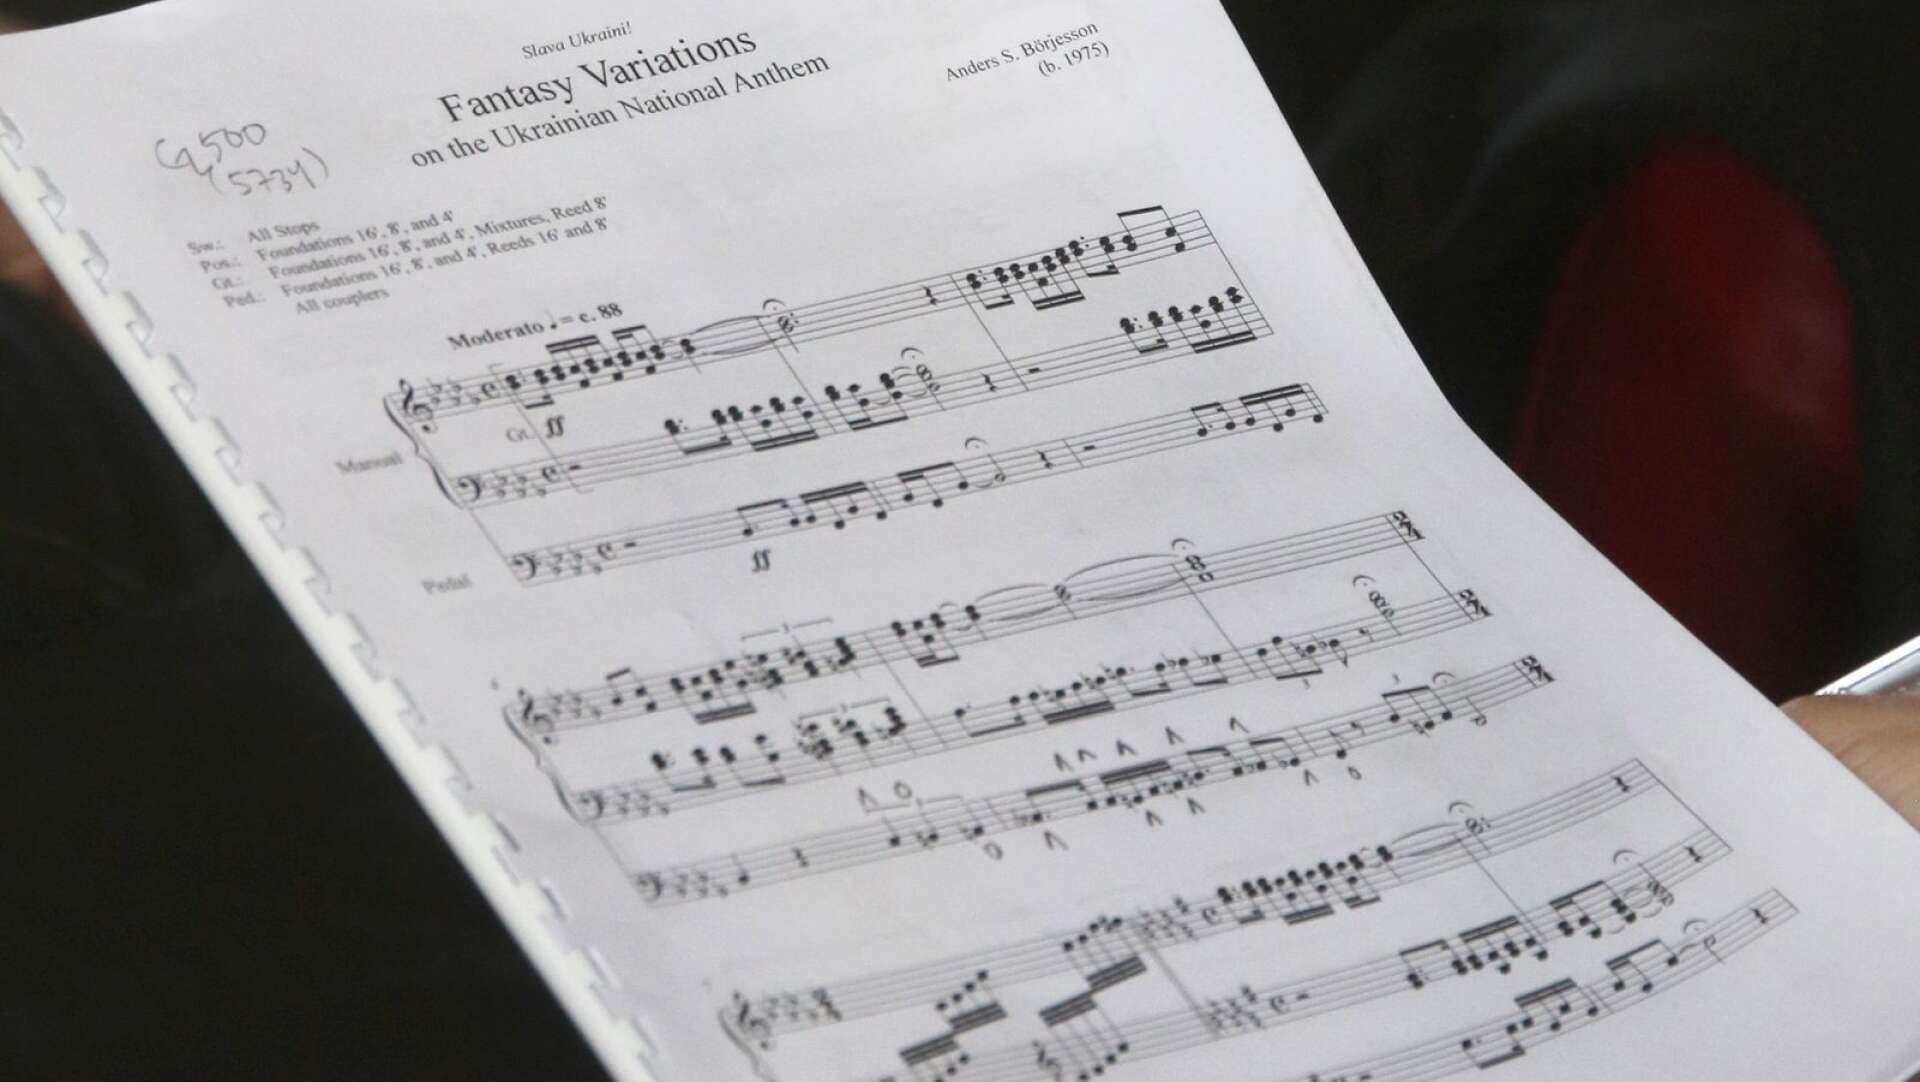 Fantasy Variations on the Ukrainian national anthem heter Anders Börjessons komposition.